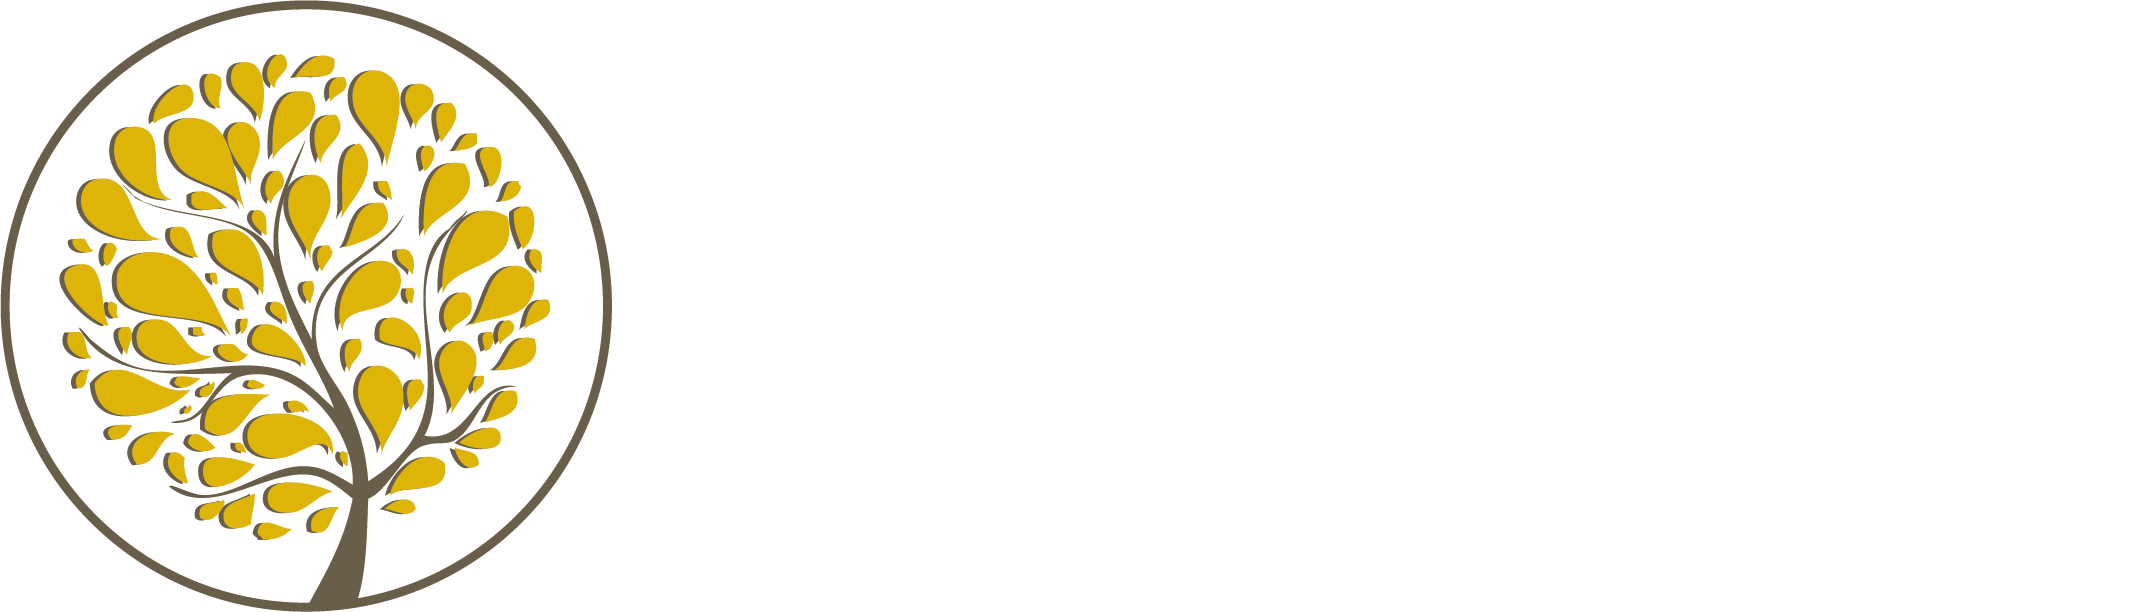 Homeview Health & Rehabilitation Center